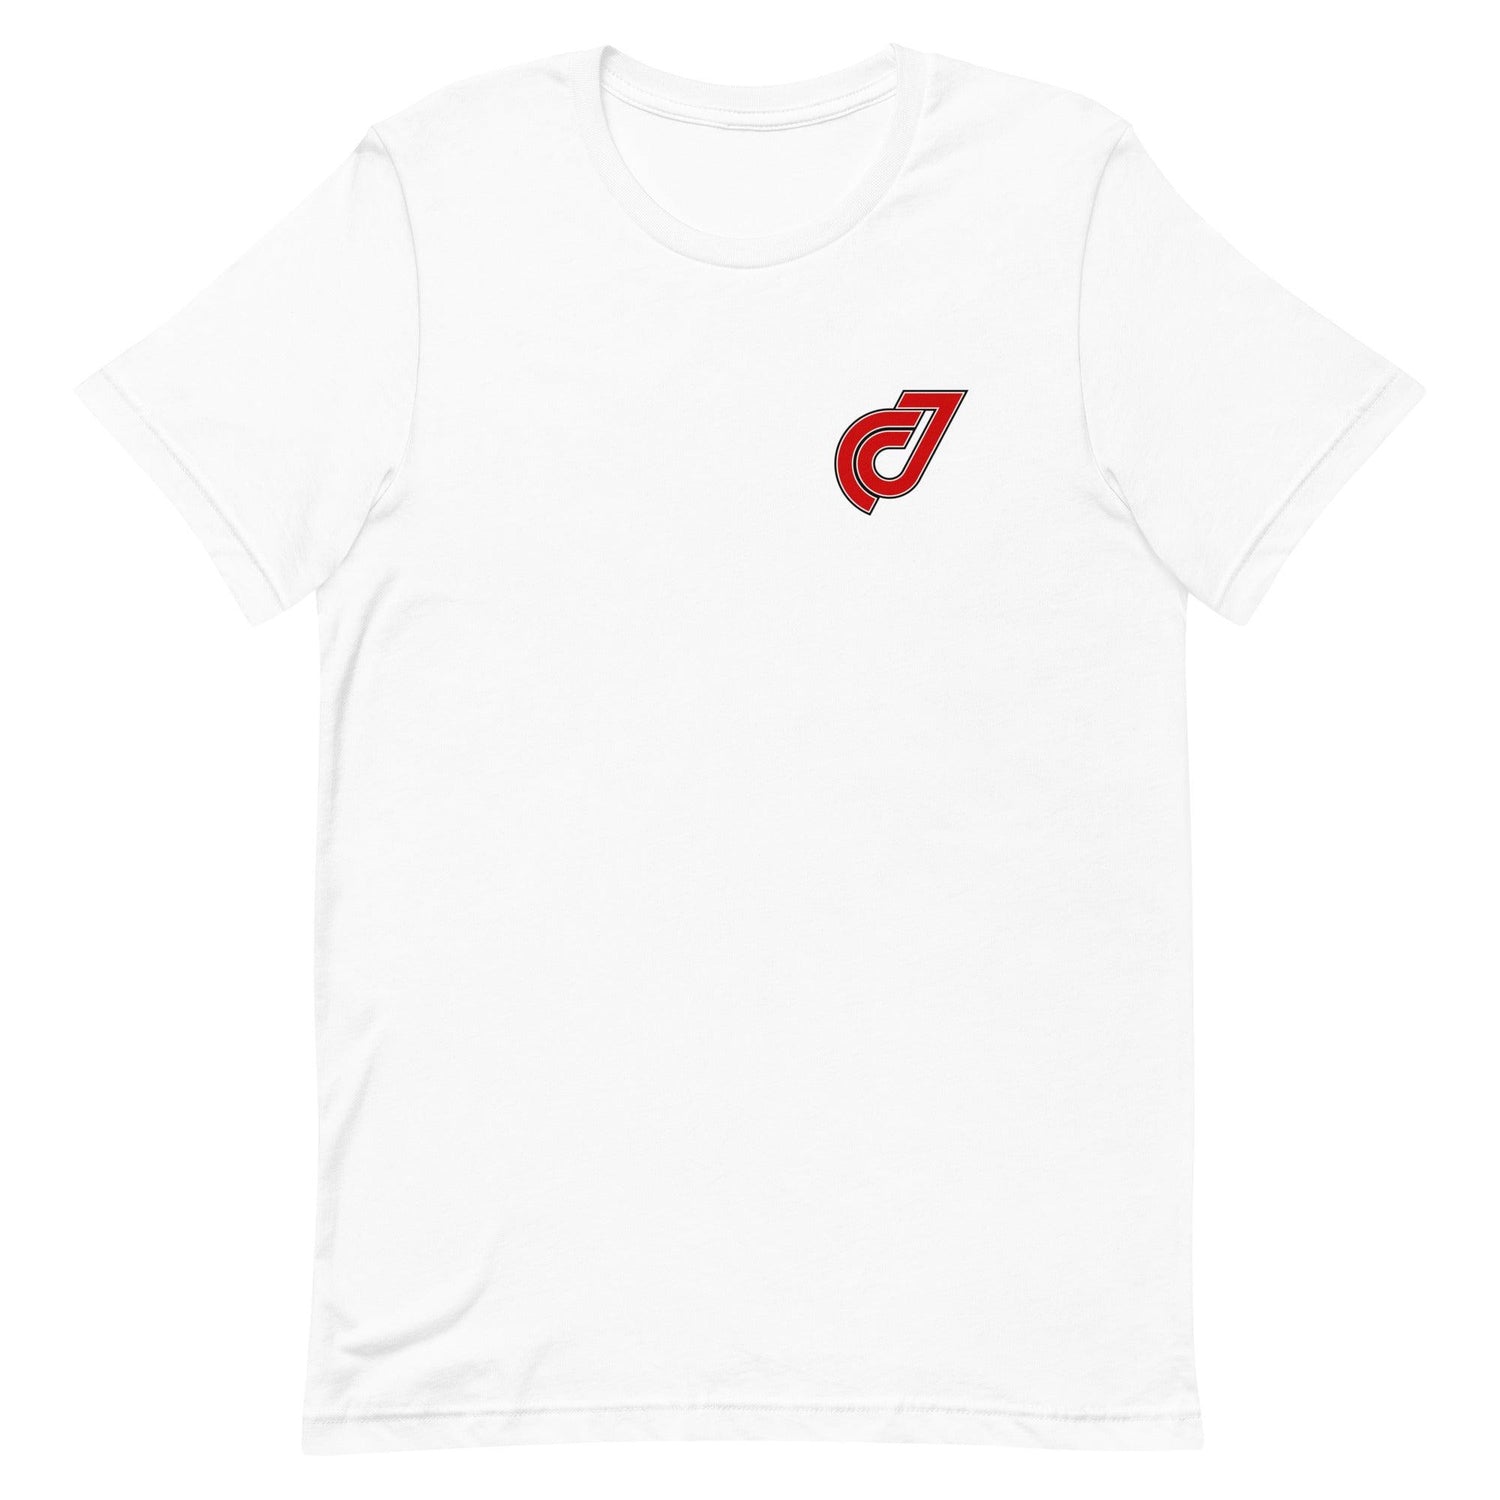 Jacob Cozart “JC” t-shirt - Fan Arch